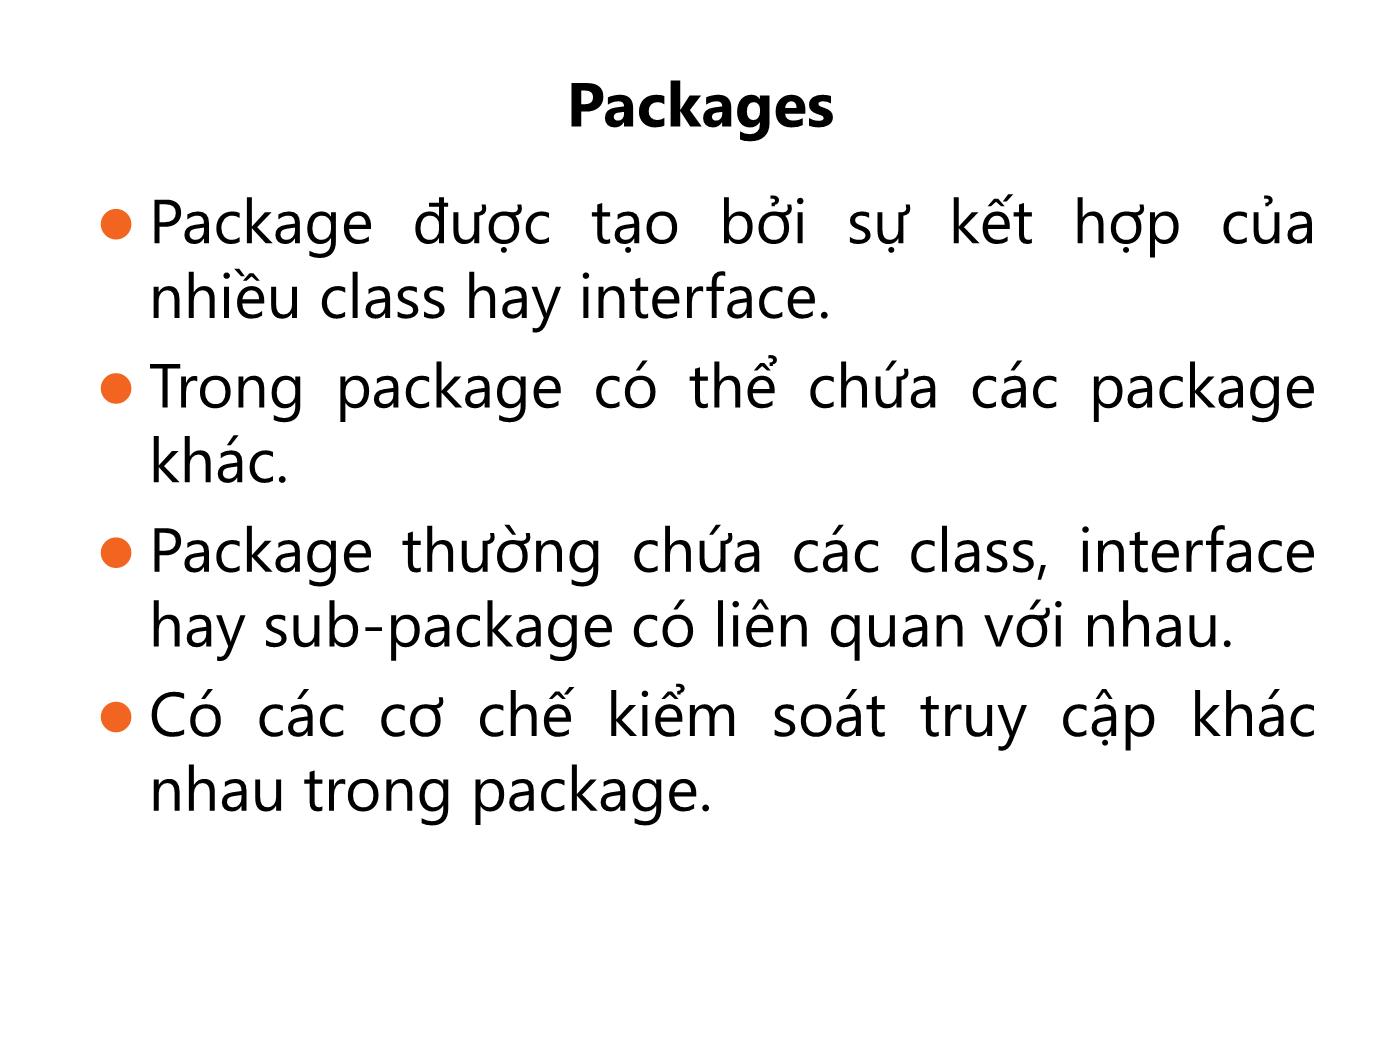 Bài giảng Lập trình Java - Bài 1: Packages và Interfaces - Trường Đại học FPT trang 4